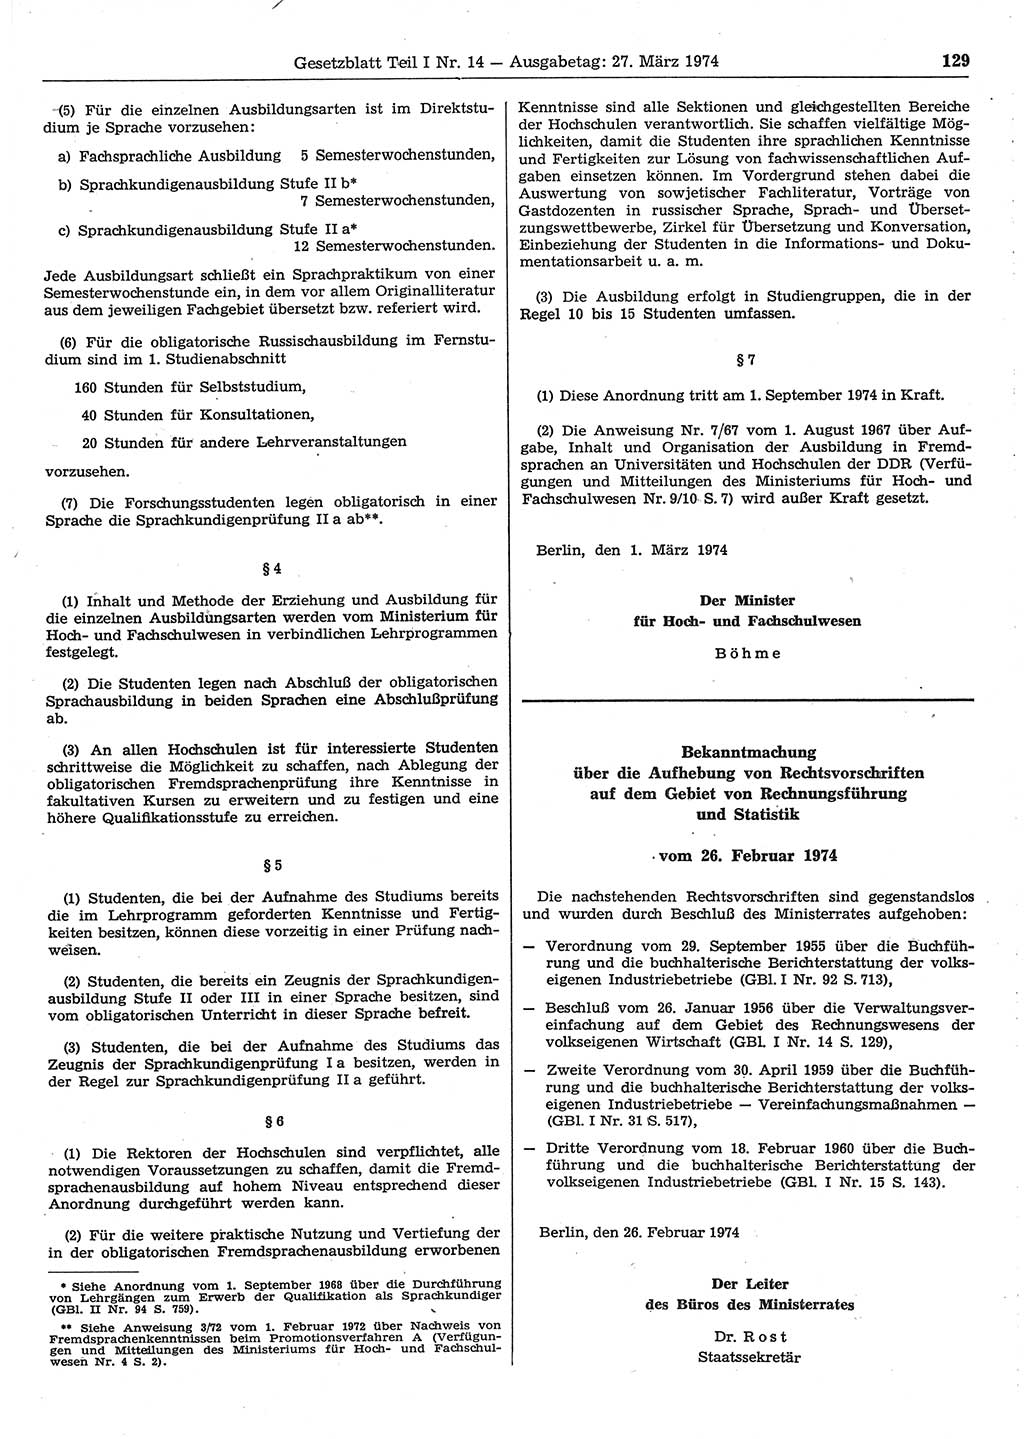 Gesetzblatt (GBl.) der Deutschen Demokratischen Republik (DDR) Teil Ⅰ 1974, Seite 129 (GBl. DDR Ⅰ 1974, S. 129)